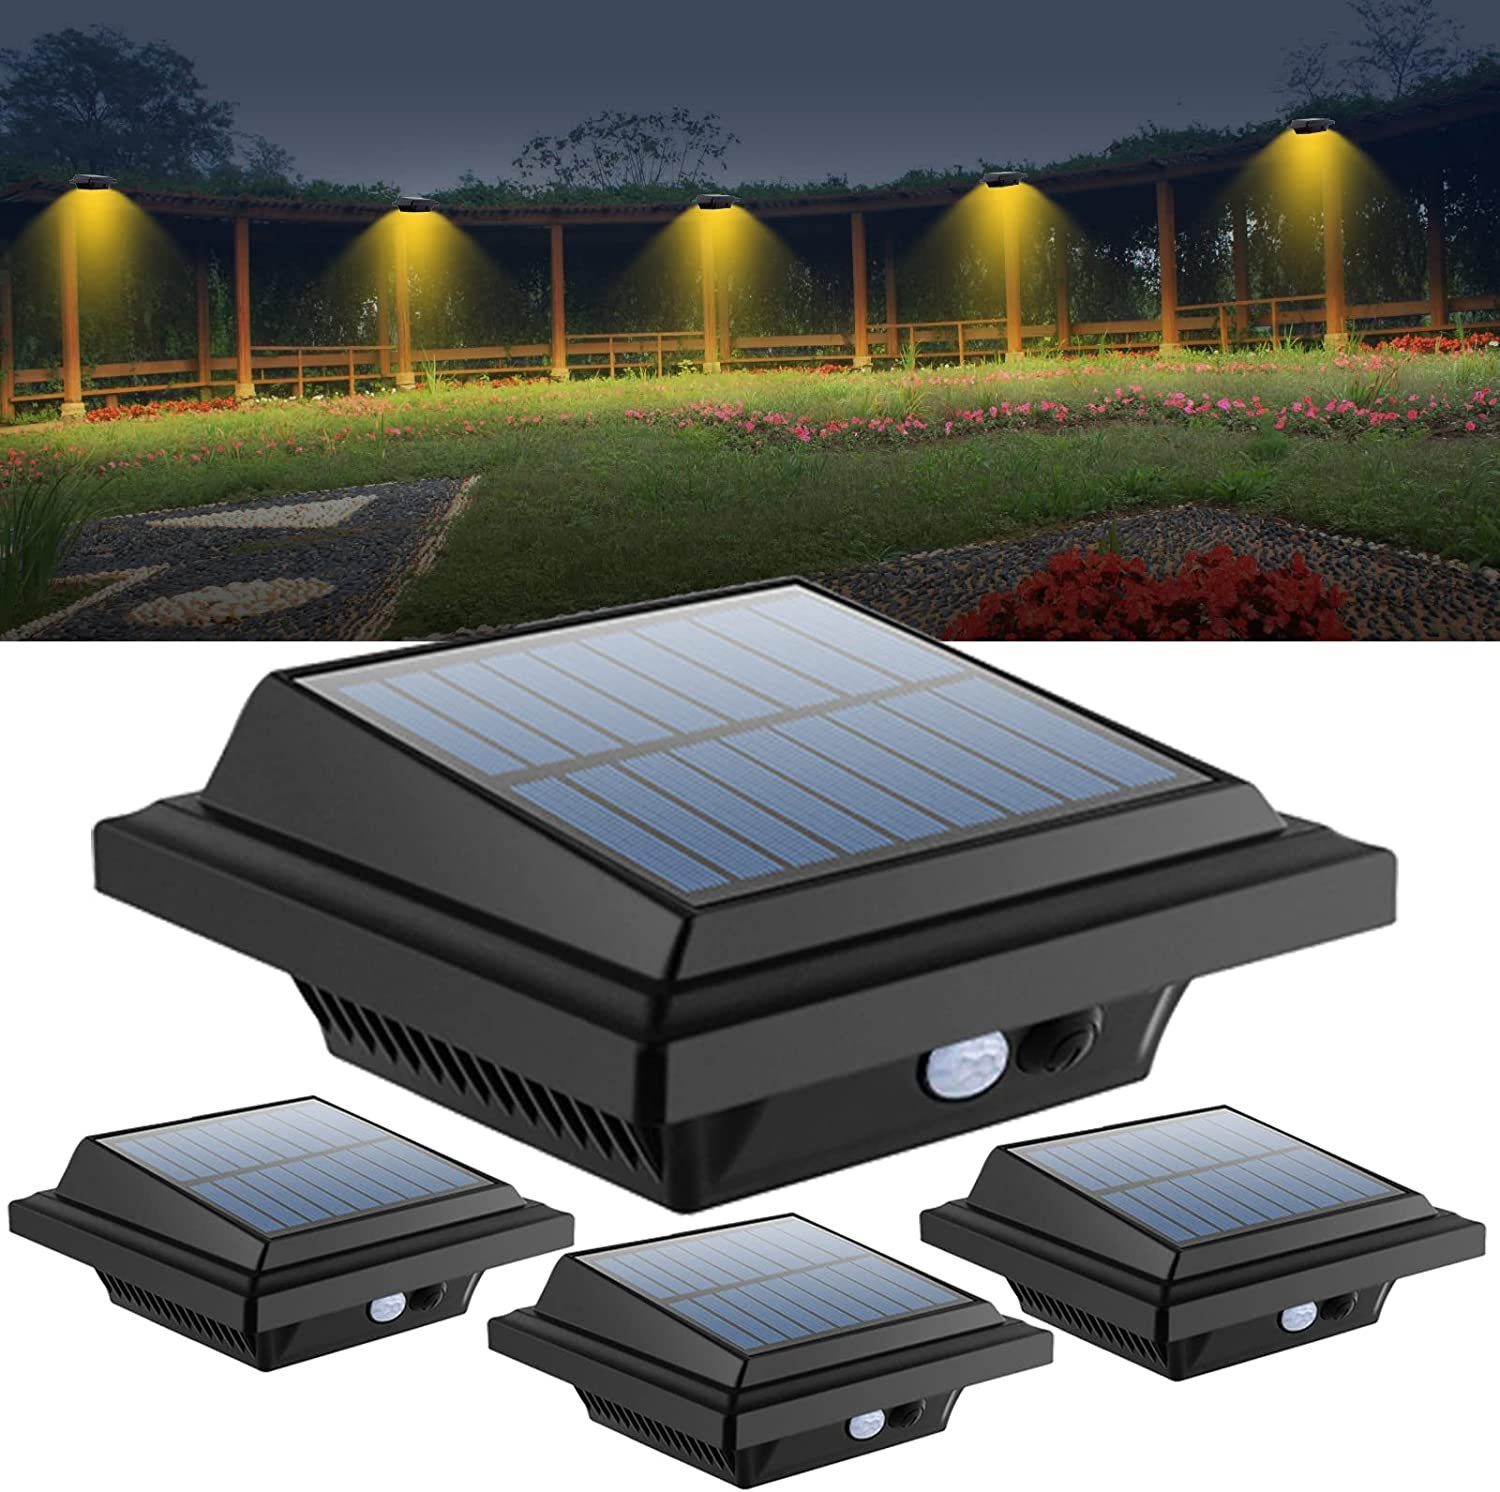 LED 4Stk.40LEDs Dachrinnenleuchte safety Solarlicht, Bewegungsmelder Home